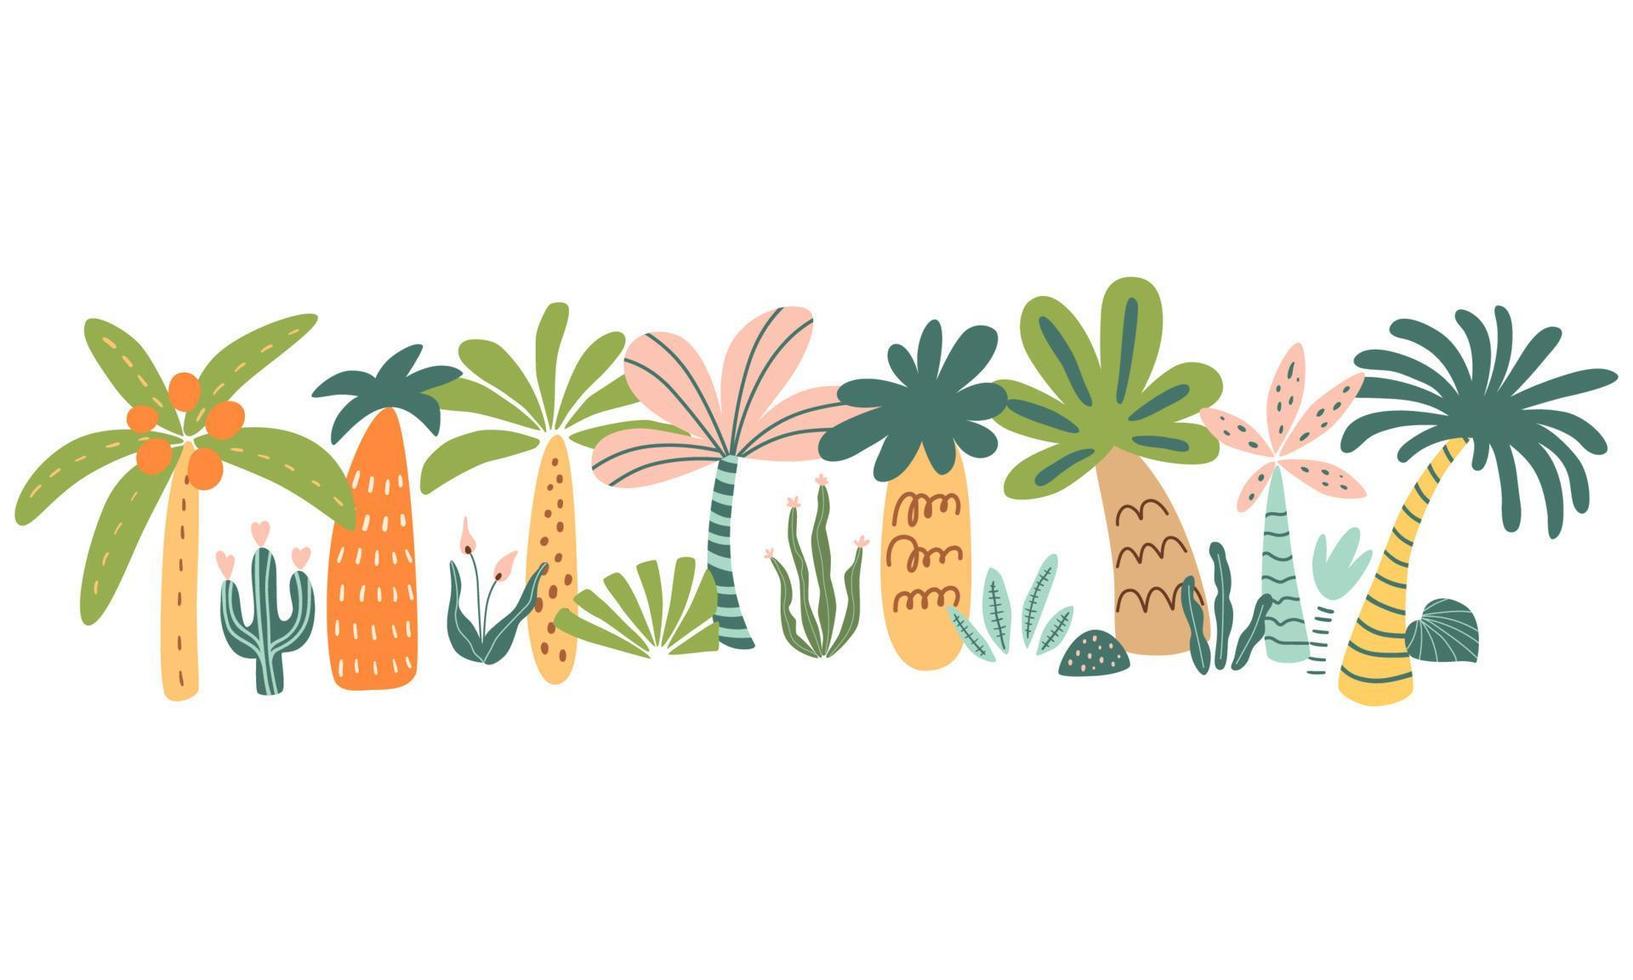 söt handflatan träd uppsättning. tropisk handflatan träd hand dragen sommar element. hawaii stil dekorativ gräns. tecknad serie träd vektor illustration. exotisk växter för Semester affischer, kort, inbjudningar djungel fest.